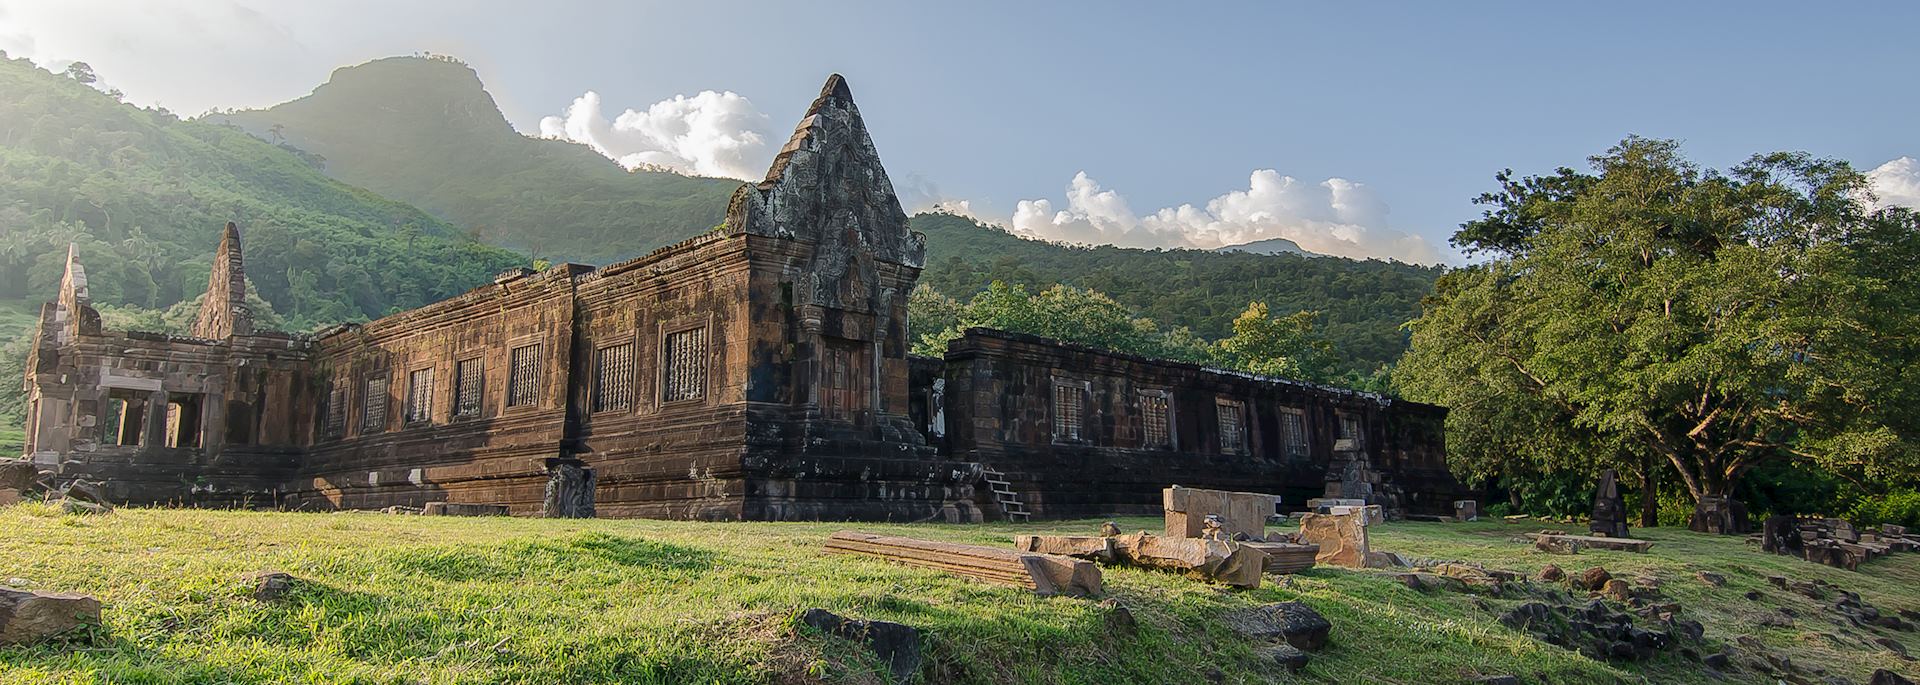 UNESCO site of Wat Phou